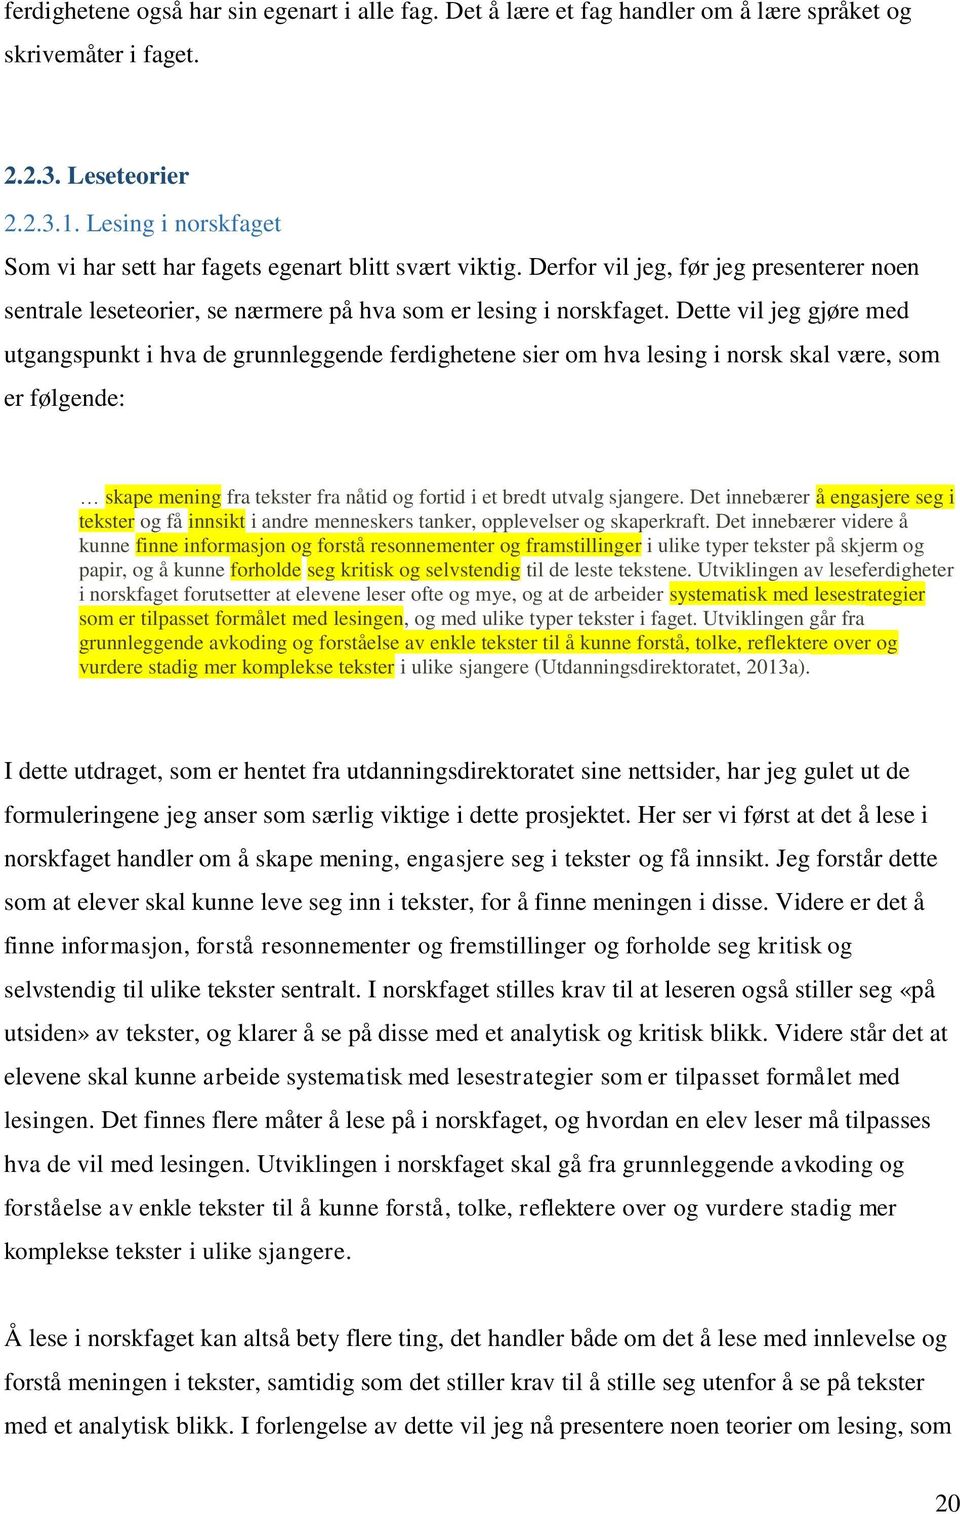 Dette vil jeg gjøre med utgangspunkt i hva de grunnleggende ferdighetene sier om hva lesing i norsk skal være, som er følgende: skape mening fra tekster fra nåtid og fortid i et bredt utvalg sjangere.